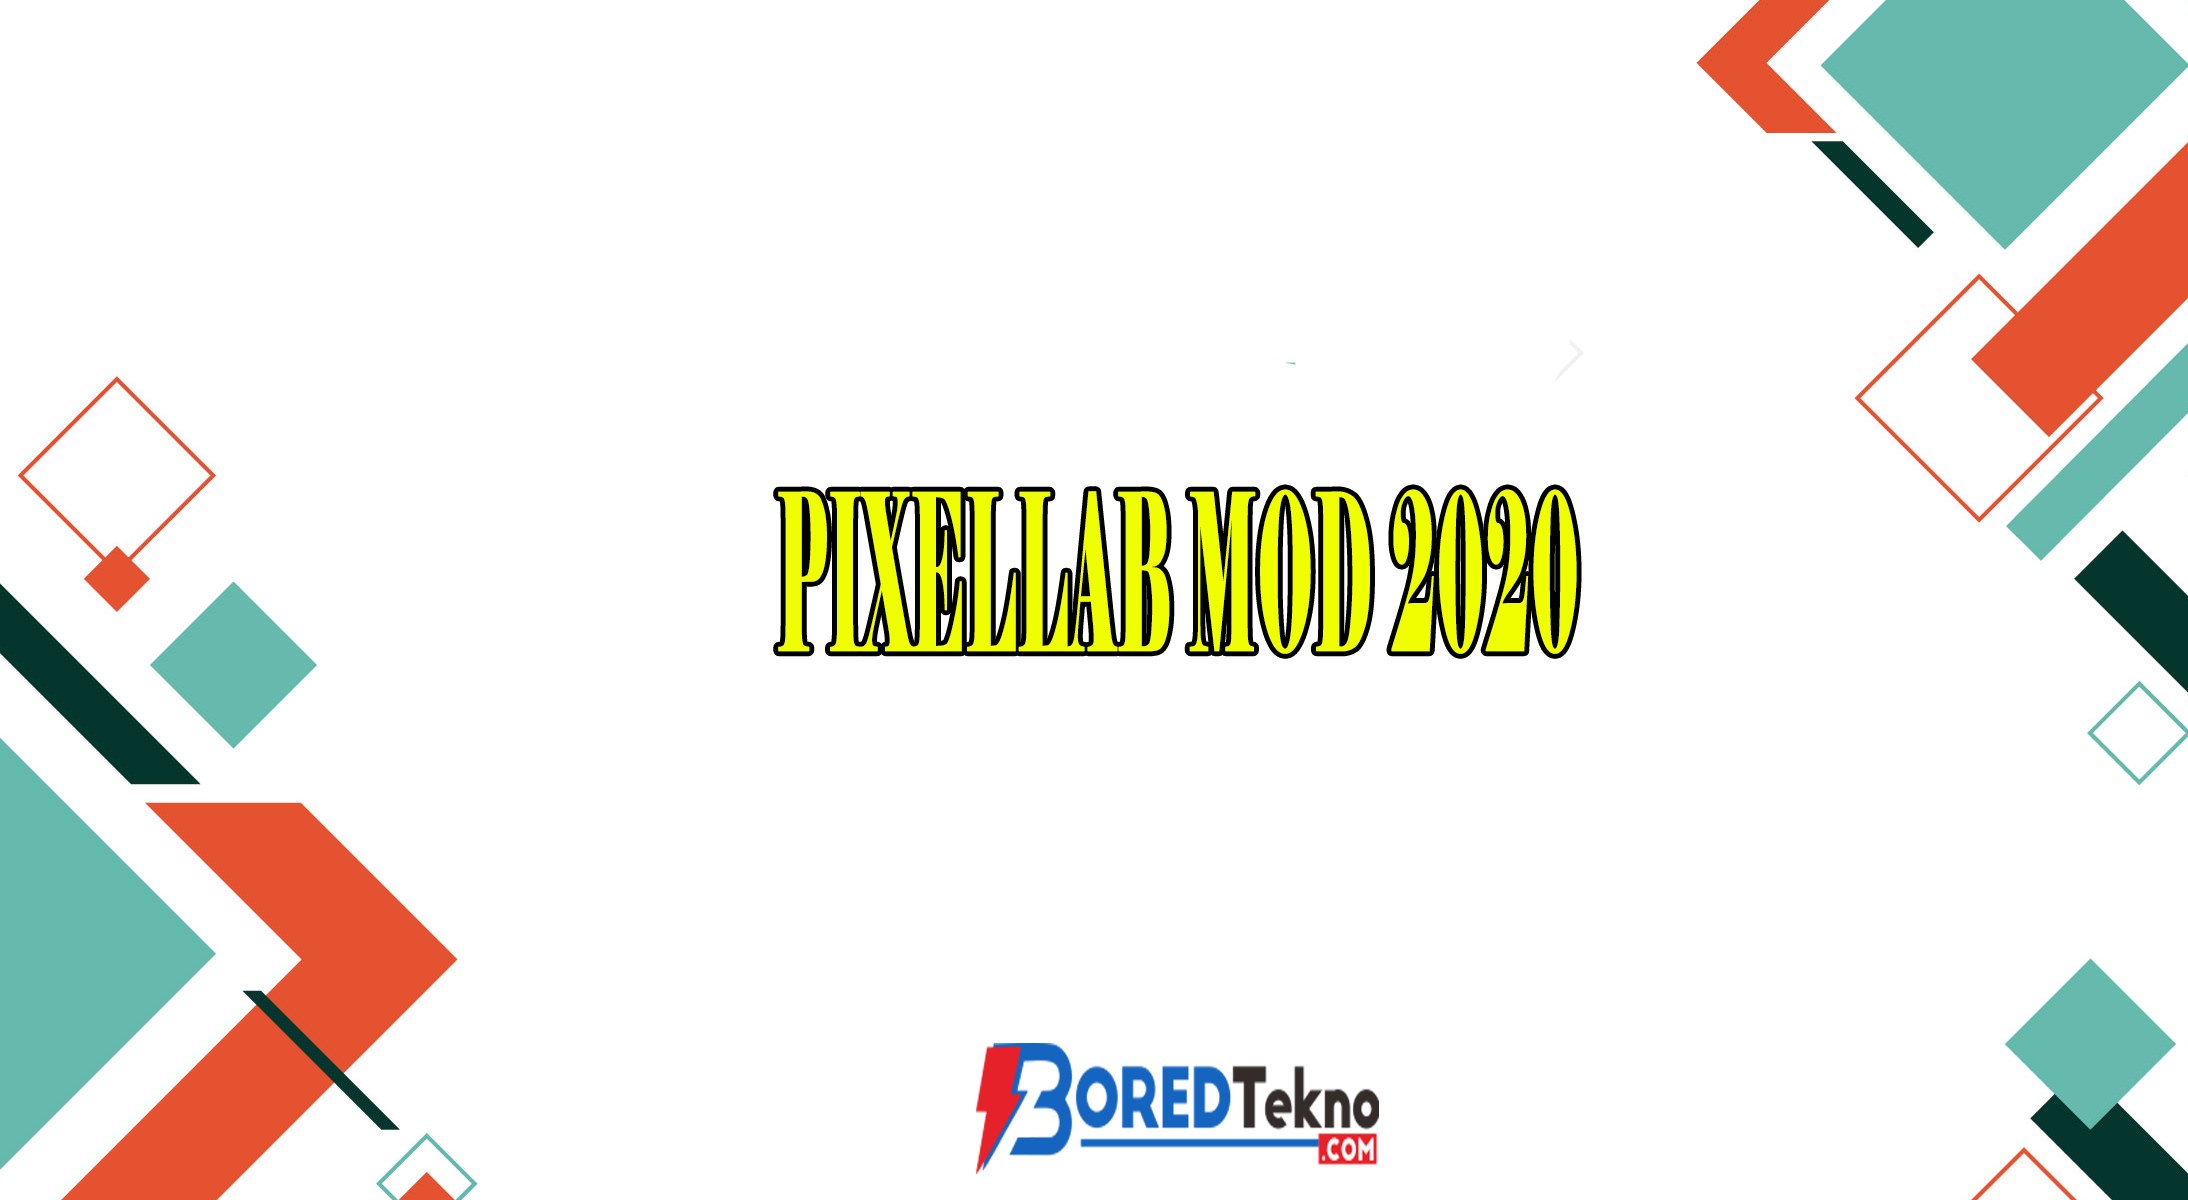 Pixellab Mod 2020